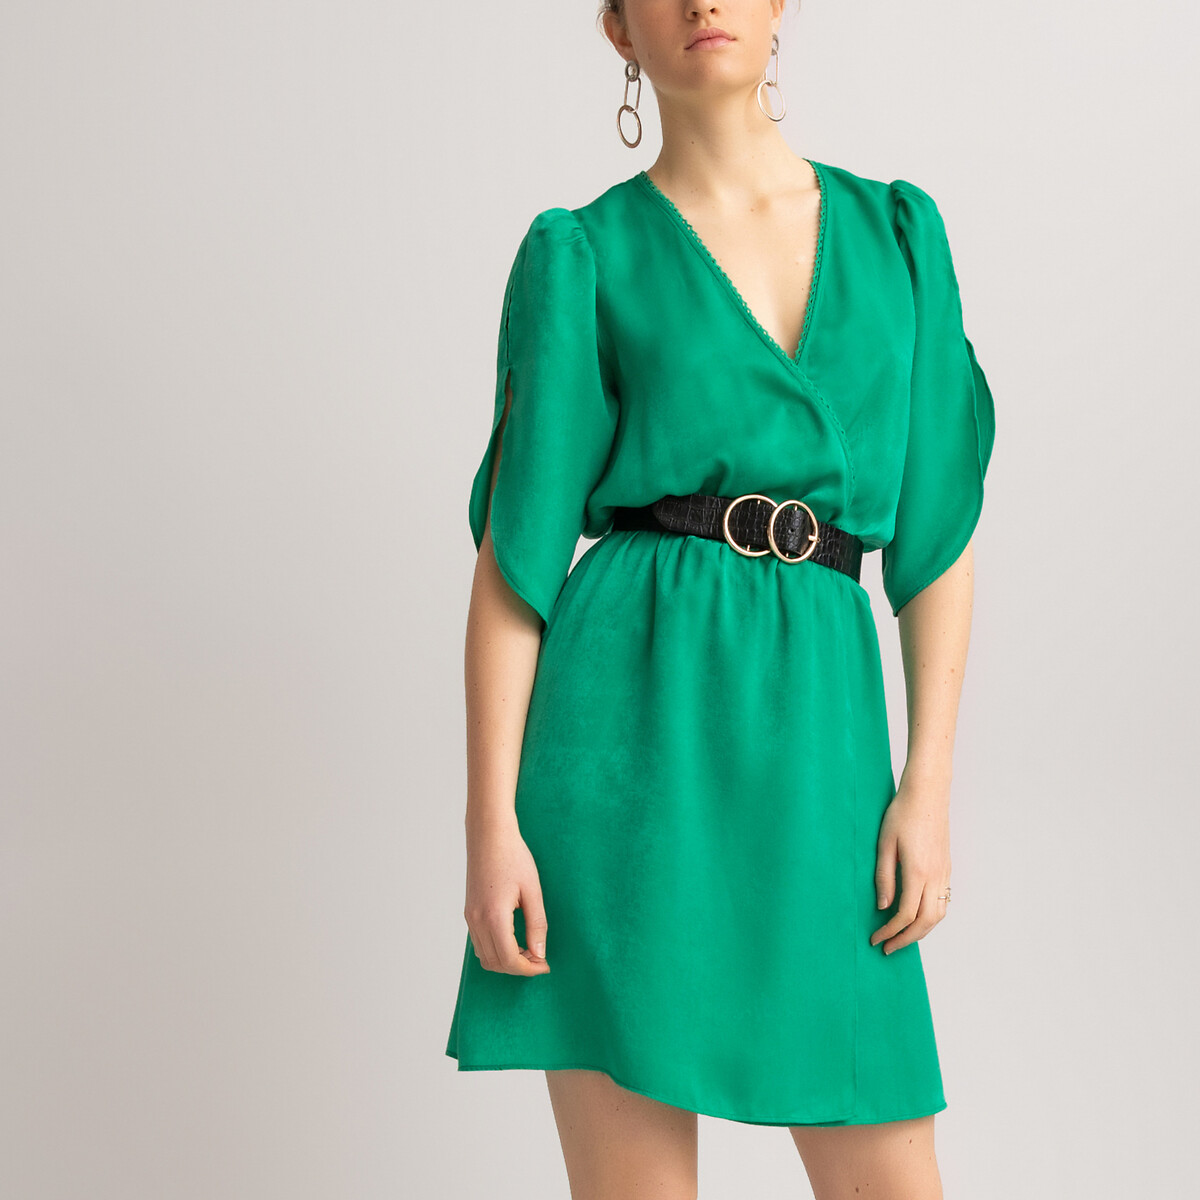 Платье LaRedoute Короткое с запахом короткие рукава 46 (FR) - 52 (RUS) зеленый, размер 46 (FR) - 52 (RUS) Короткое с запахом короткие рукава 46 (FR) - 52 (RUS) зеленый - фото 3